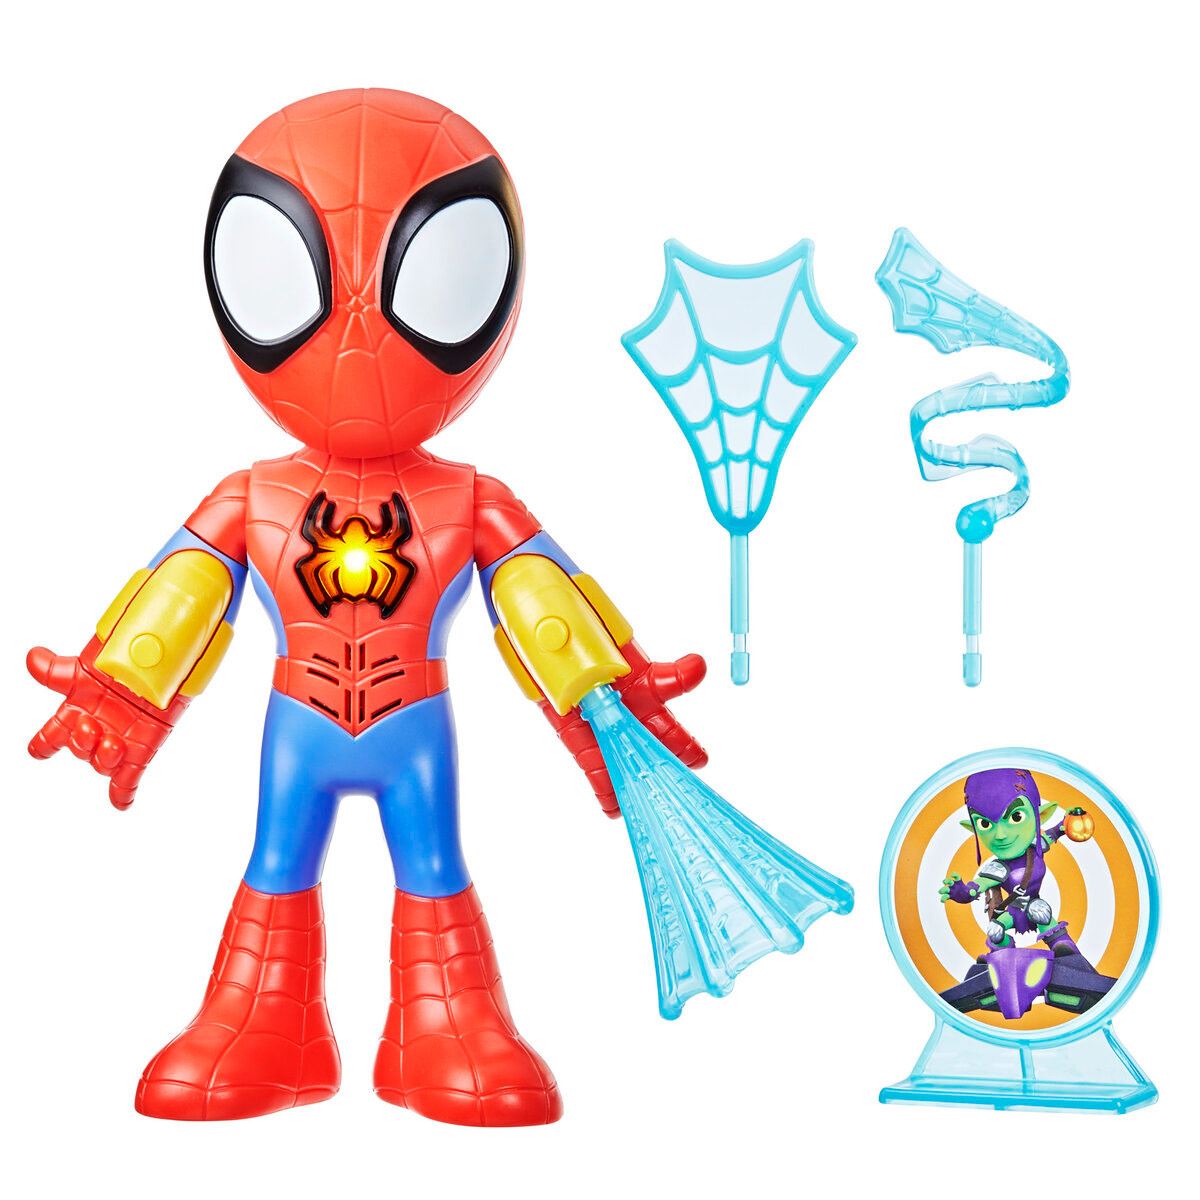 Spidey and His Amazing Friends Figura de héroe de Spidey de Marvel, figura  de acción a escala de 4 pulgadas, incluye 1 accesorio para niños a partir